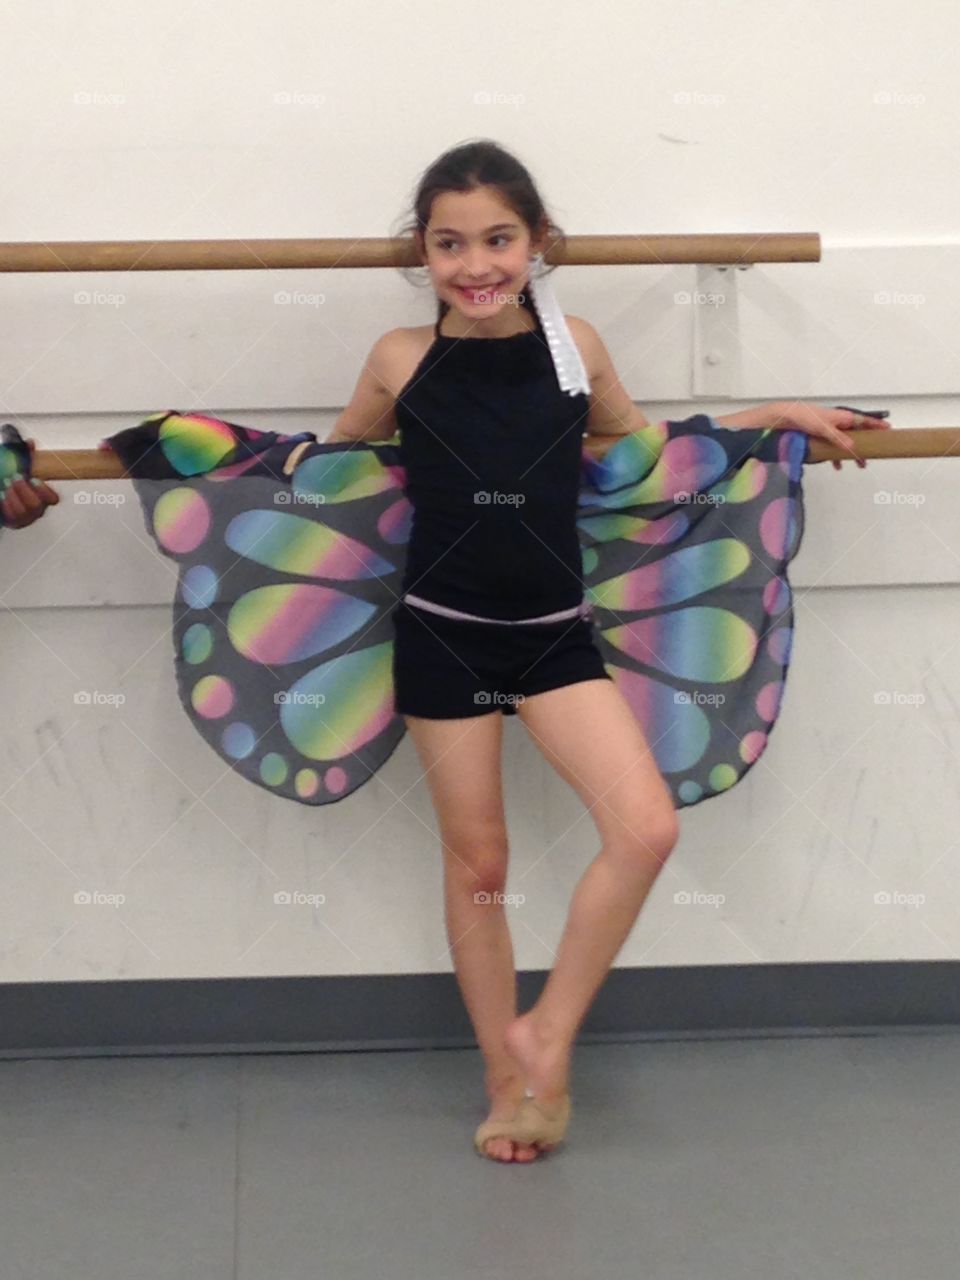 Butterfly dancer